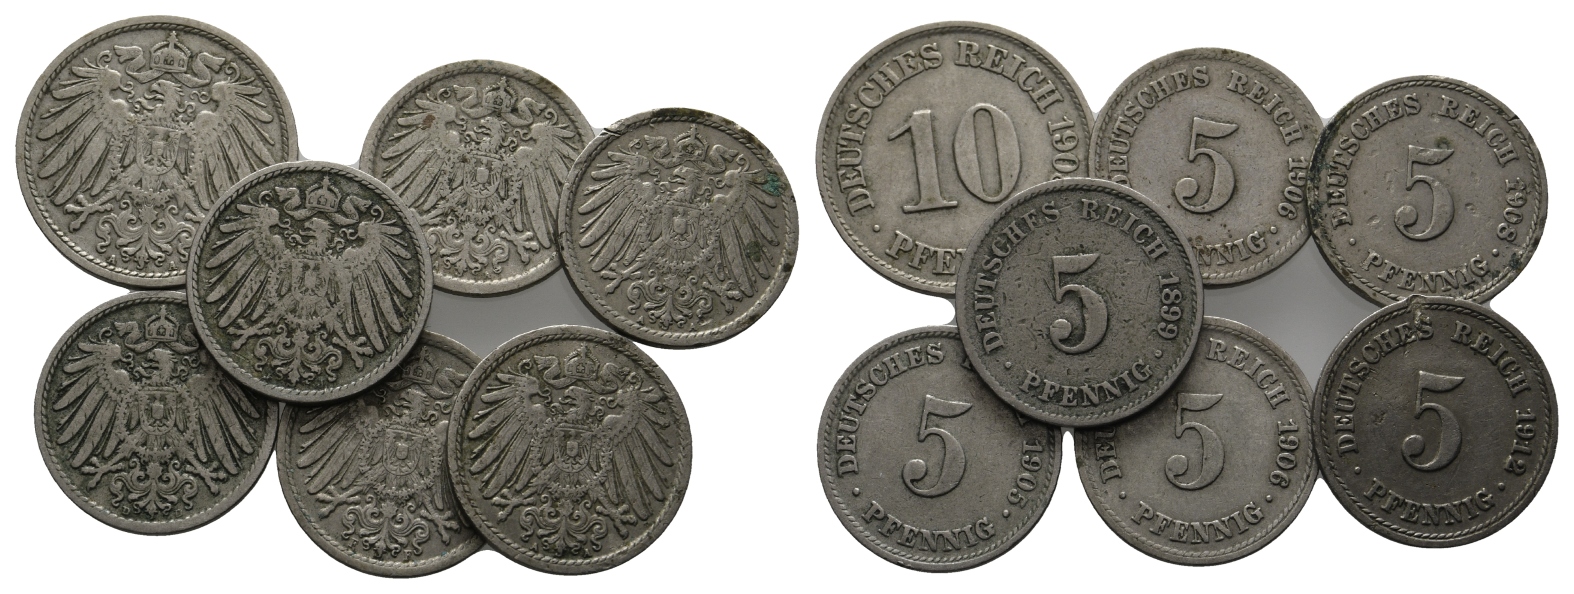  Deutsches Kaiserreich; 6 x 5 Pfennig, 1 x 10 Pfennig,   